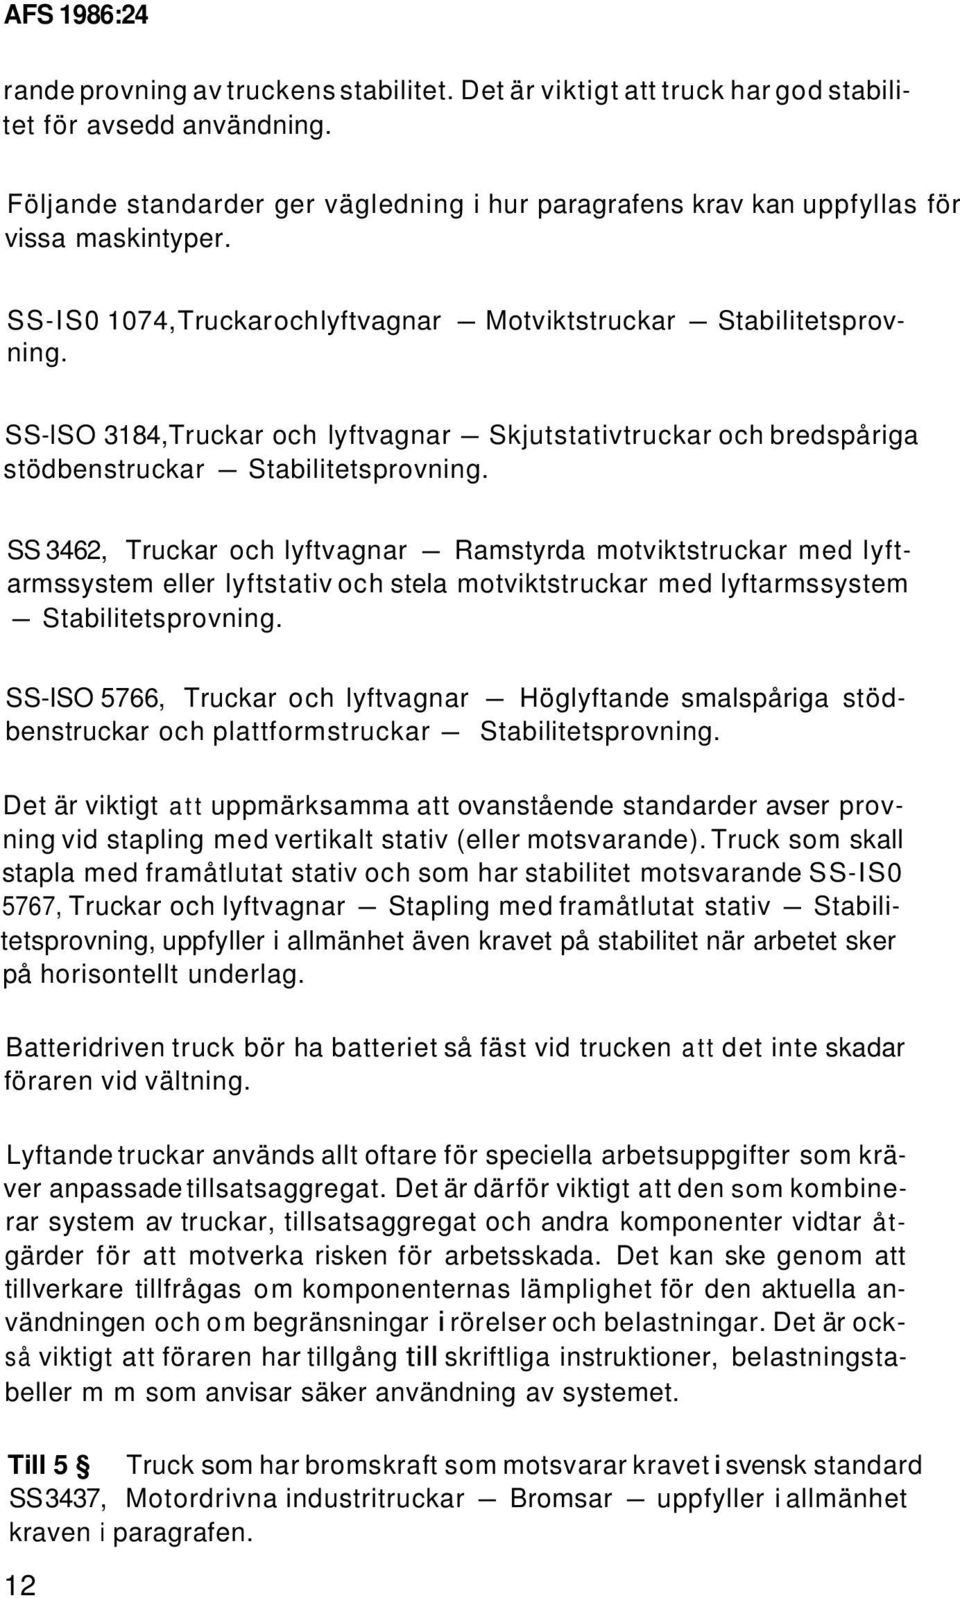 SS 3462, Truckar och lyftvagnar - Ramstyrda motviktstruckar med lyftarmssystem eller lyftstativ och stela motviktstruckar med lyftarmssystem - Stabilitetsprovning.